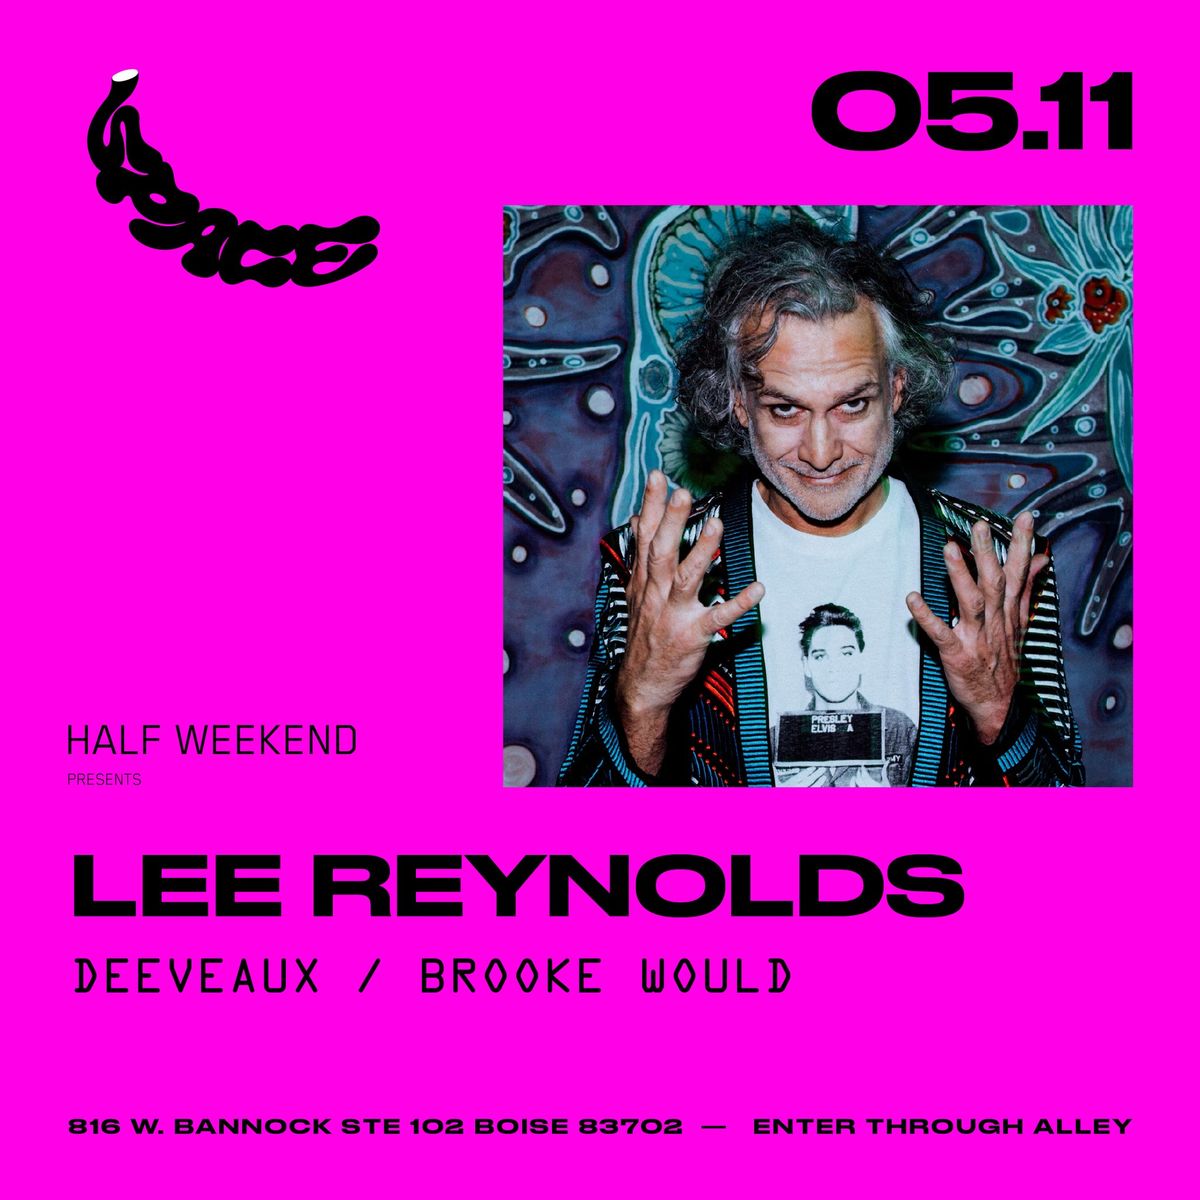 Half Weekend Presents Lee Reynolds